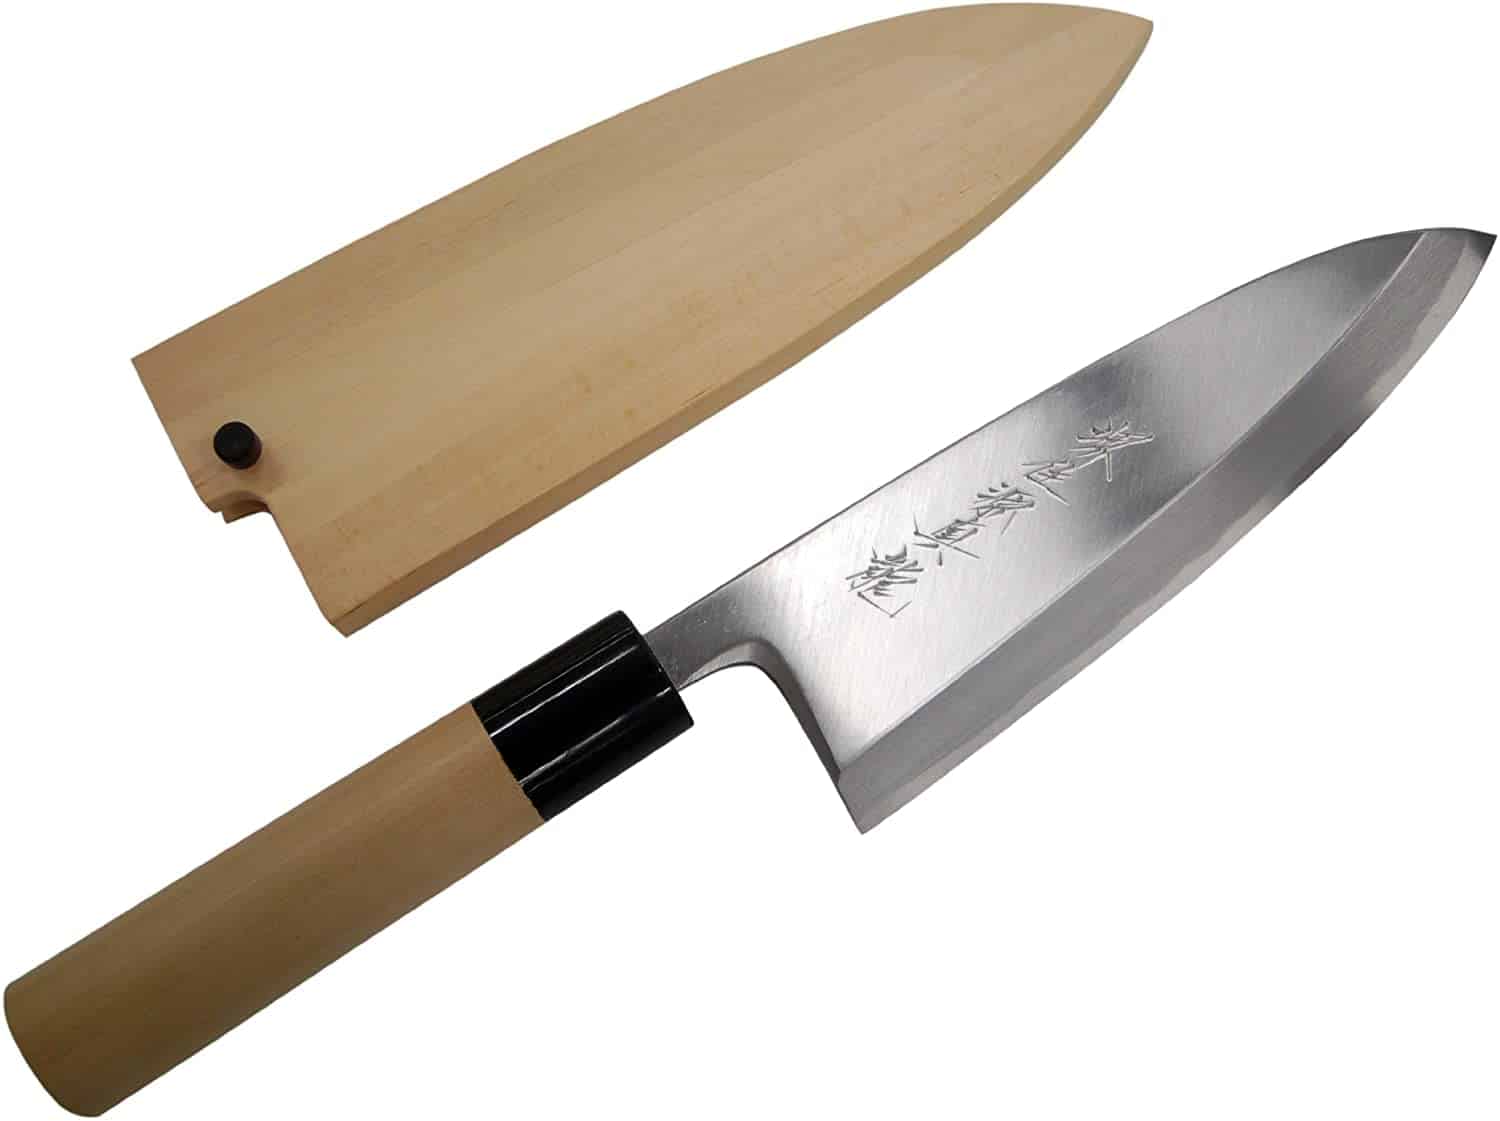 Mejor cortadora de huesos y cartílagos (Deba-bocho) - Cuchillos de cocina SANE-TATSU Deba Bocho